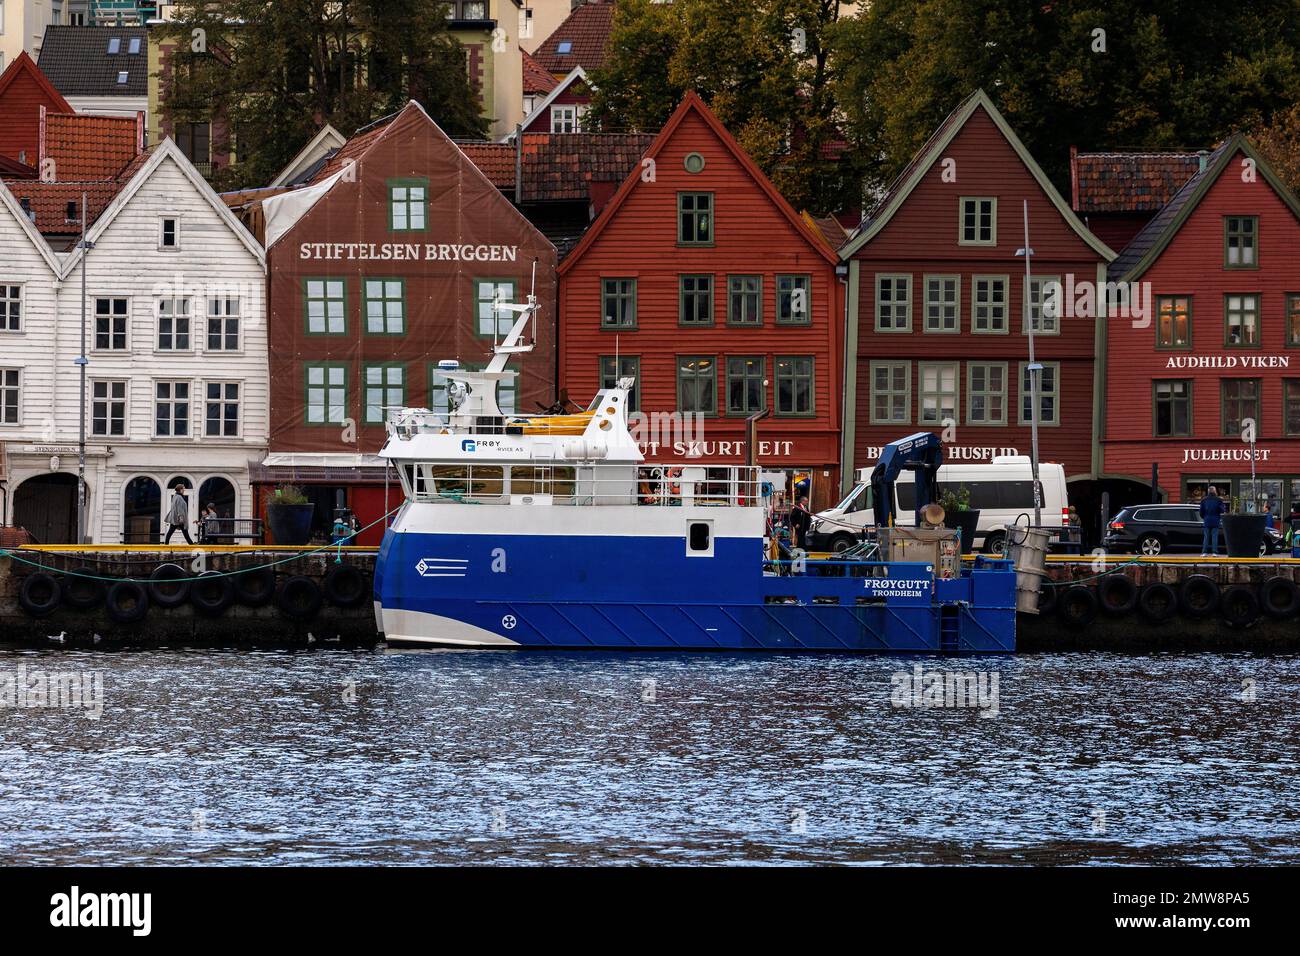 Angeln und Arbeitsboot Froygutt (Frøygutt) am historischen Bryggen Quay im Hafen von Bergen, Norwegen. Stockfoto